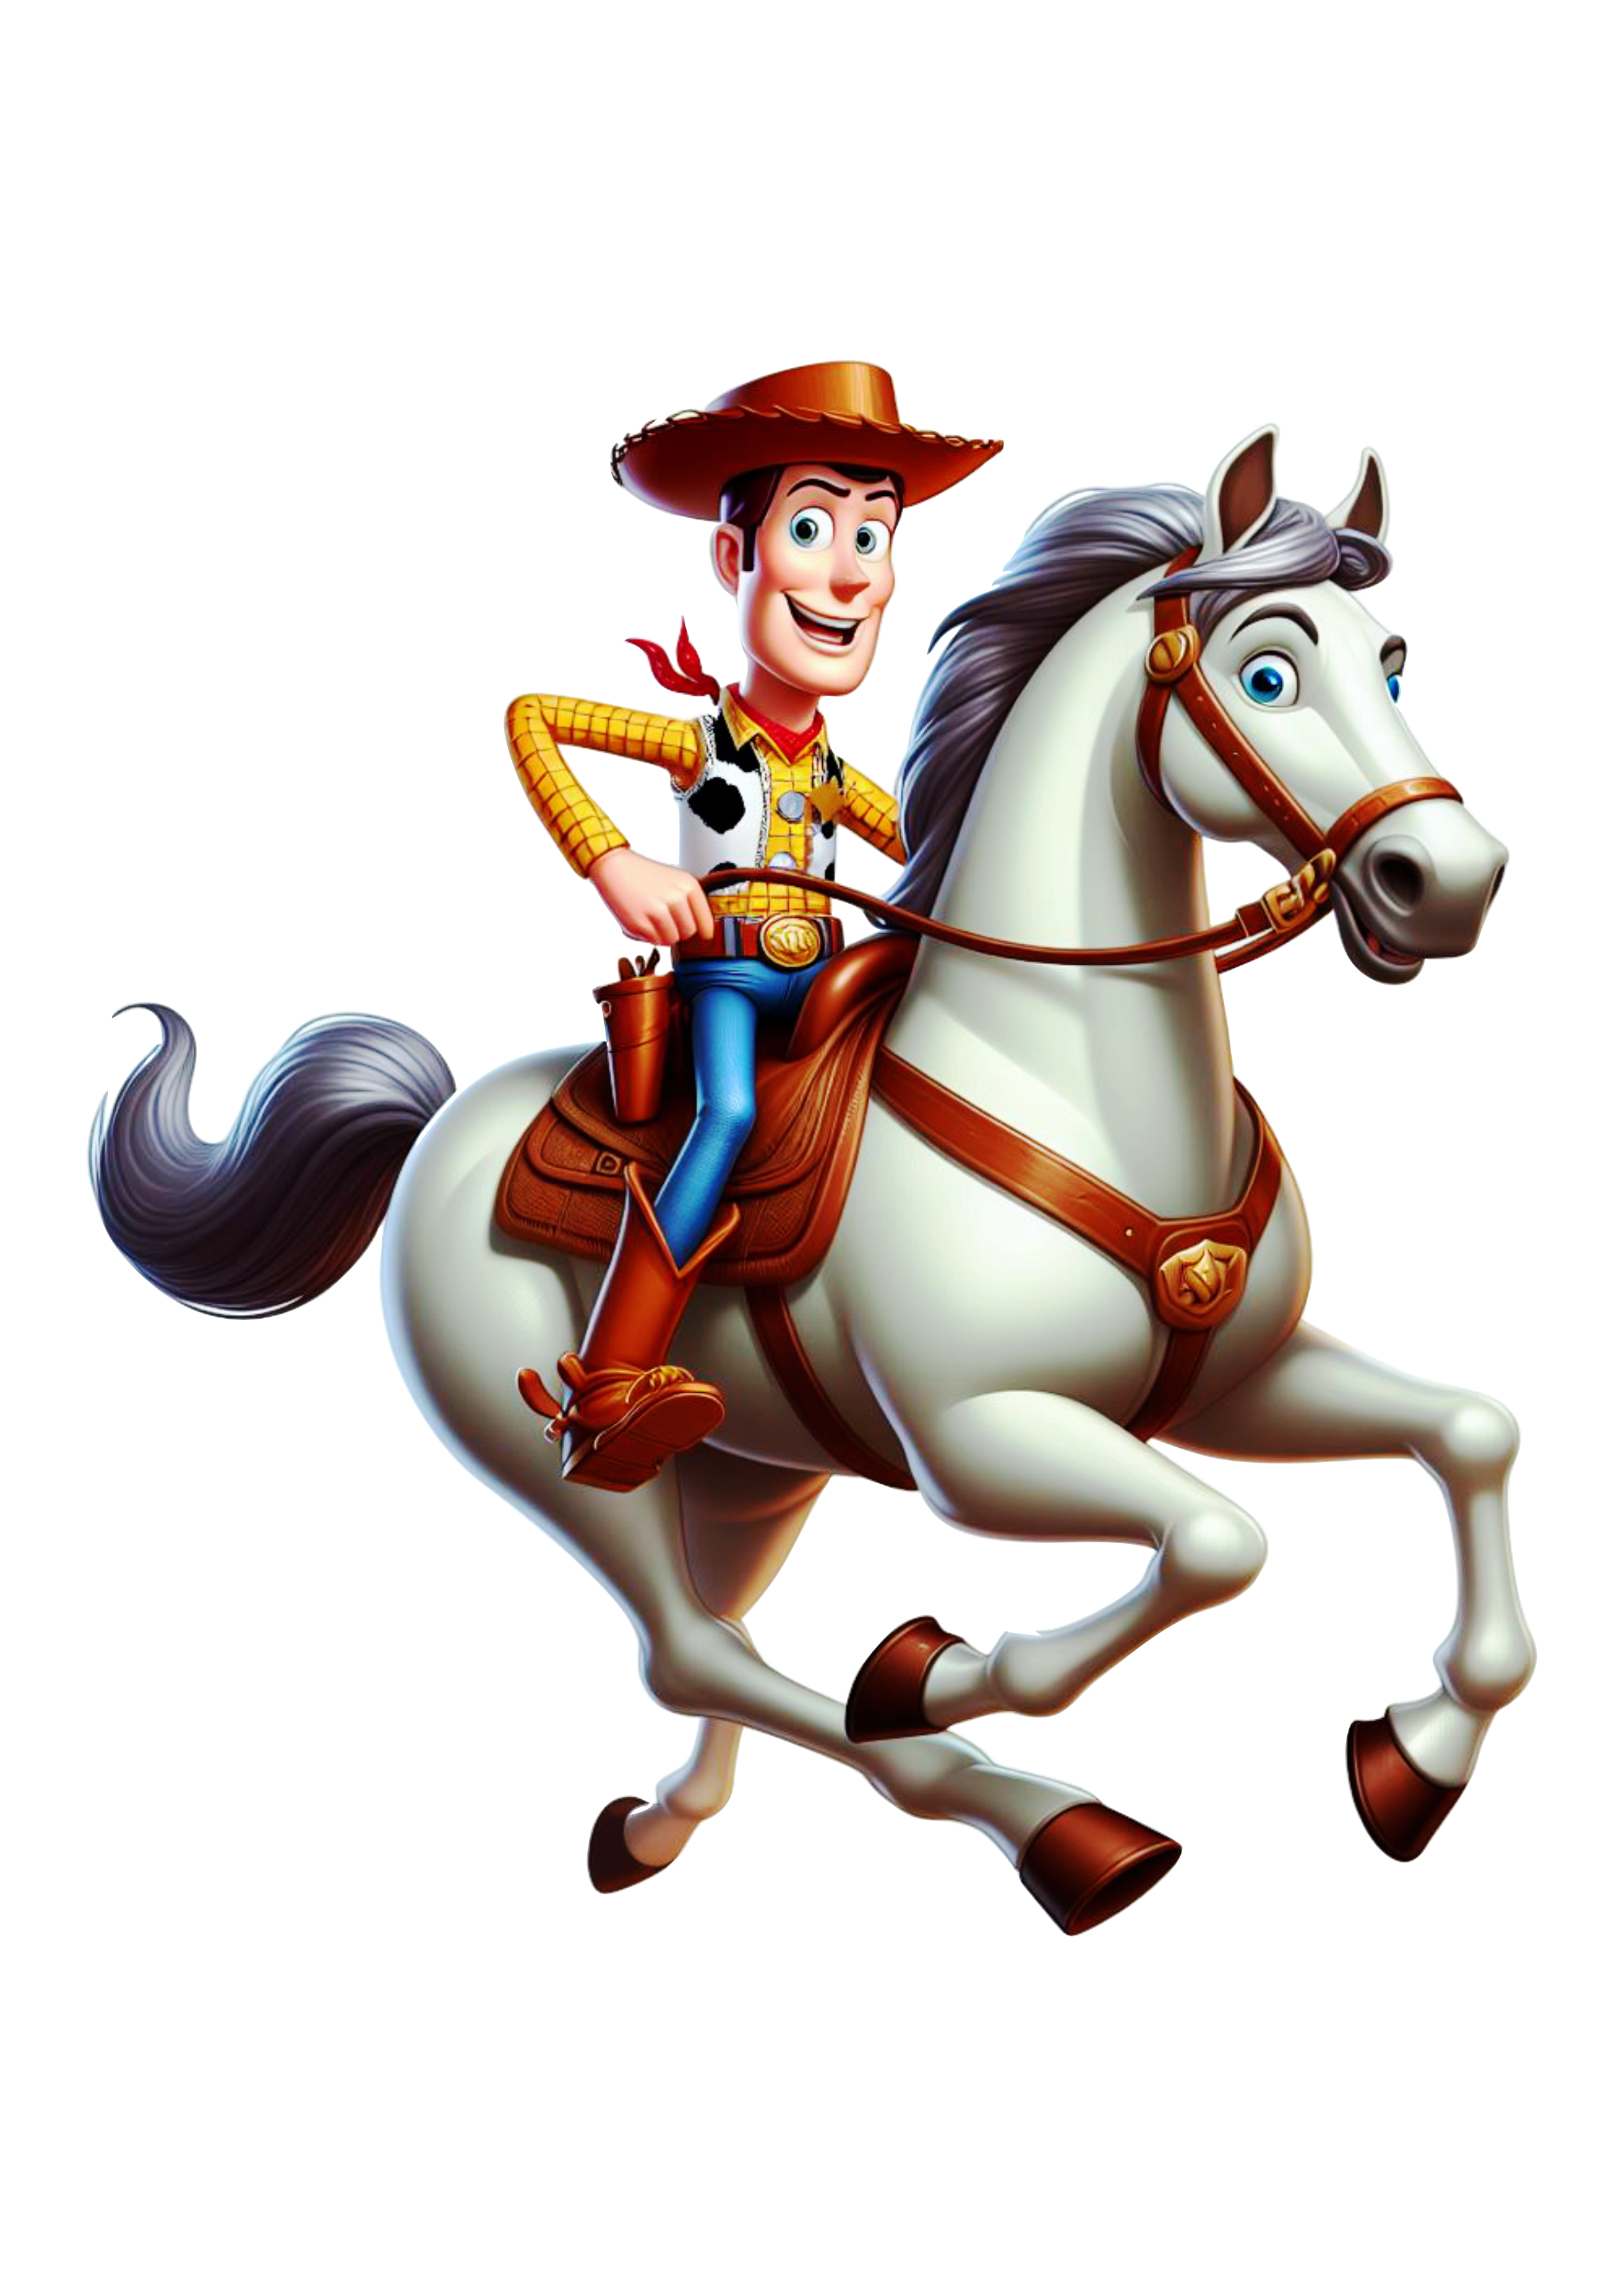 Xerife Woody montado no cavalo Toy Story animação infantil Disney png image clipart